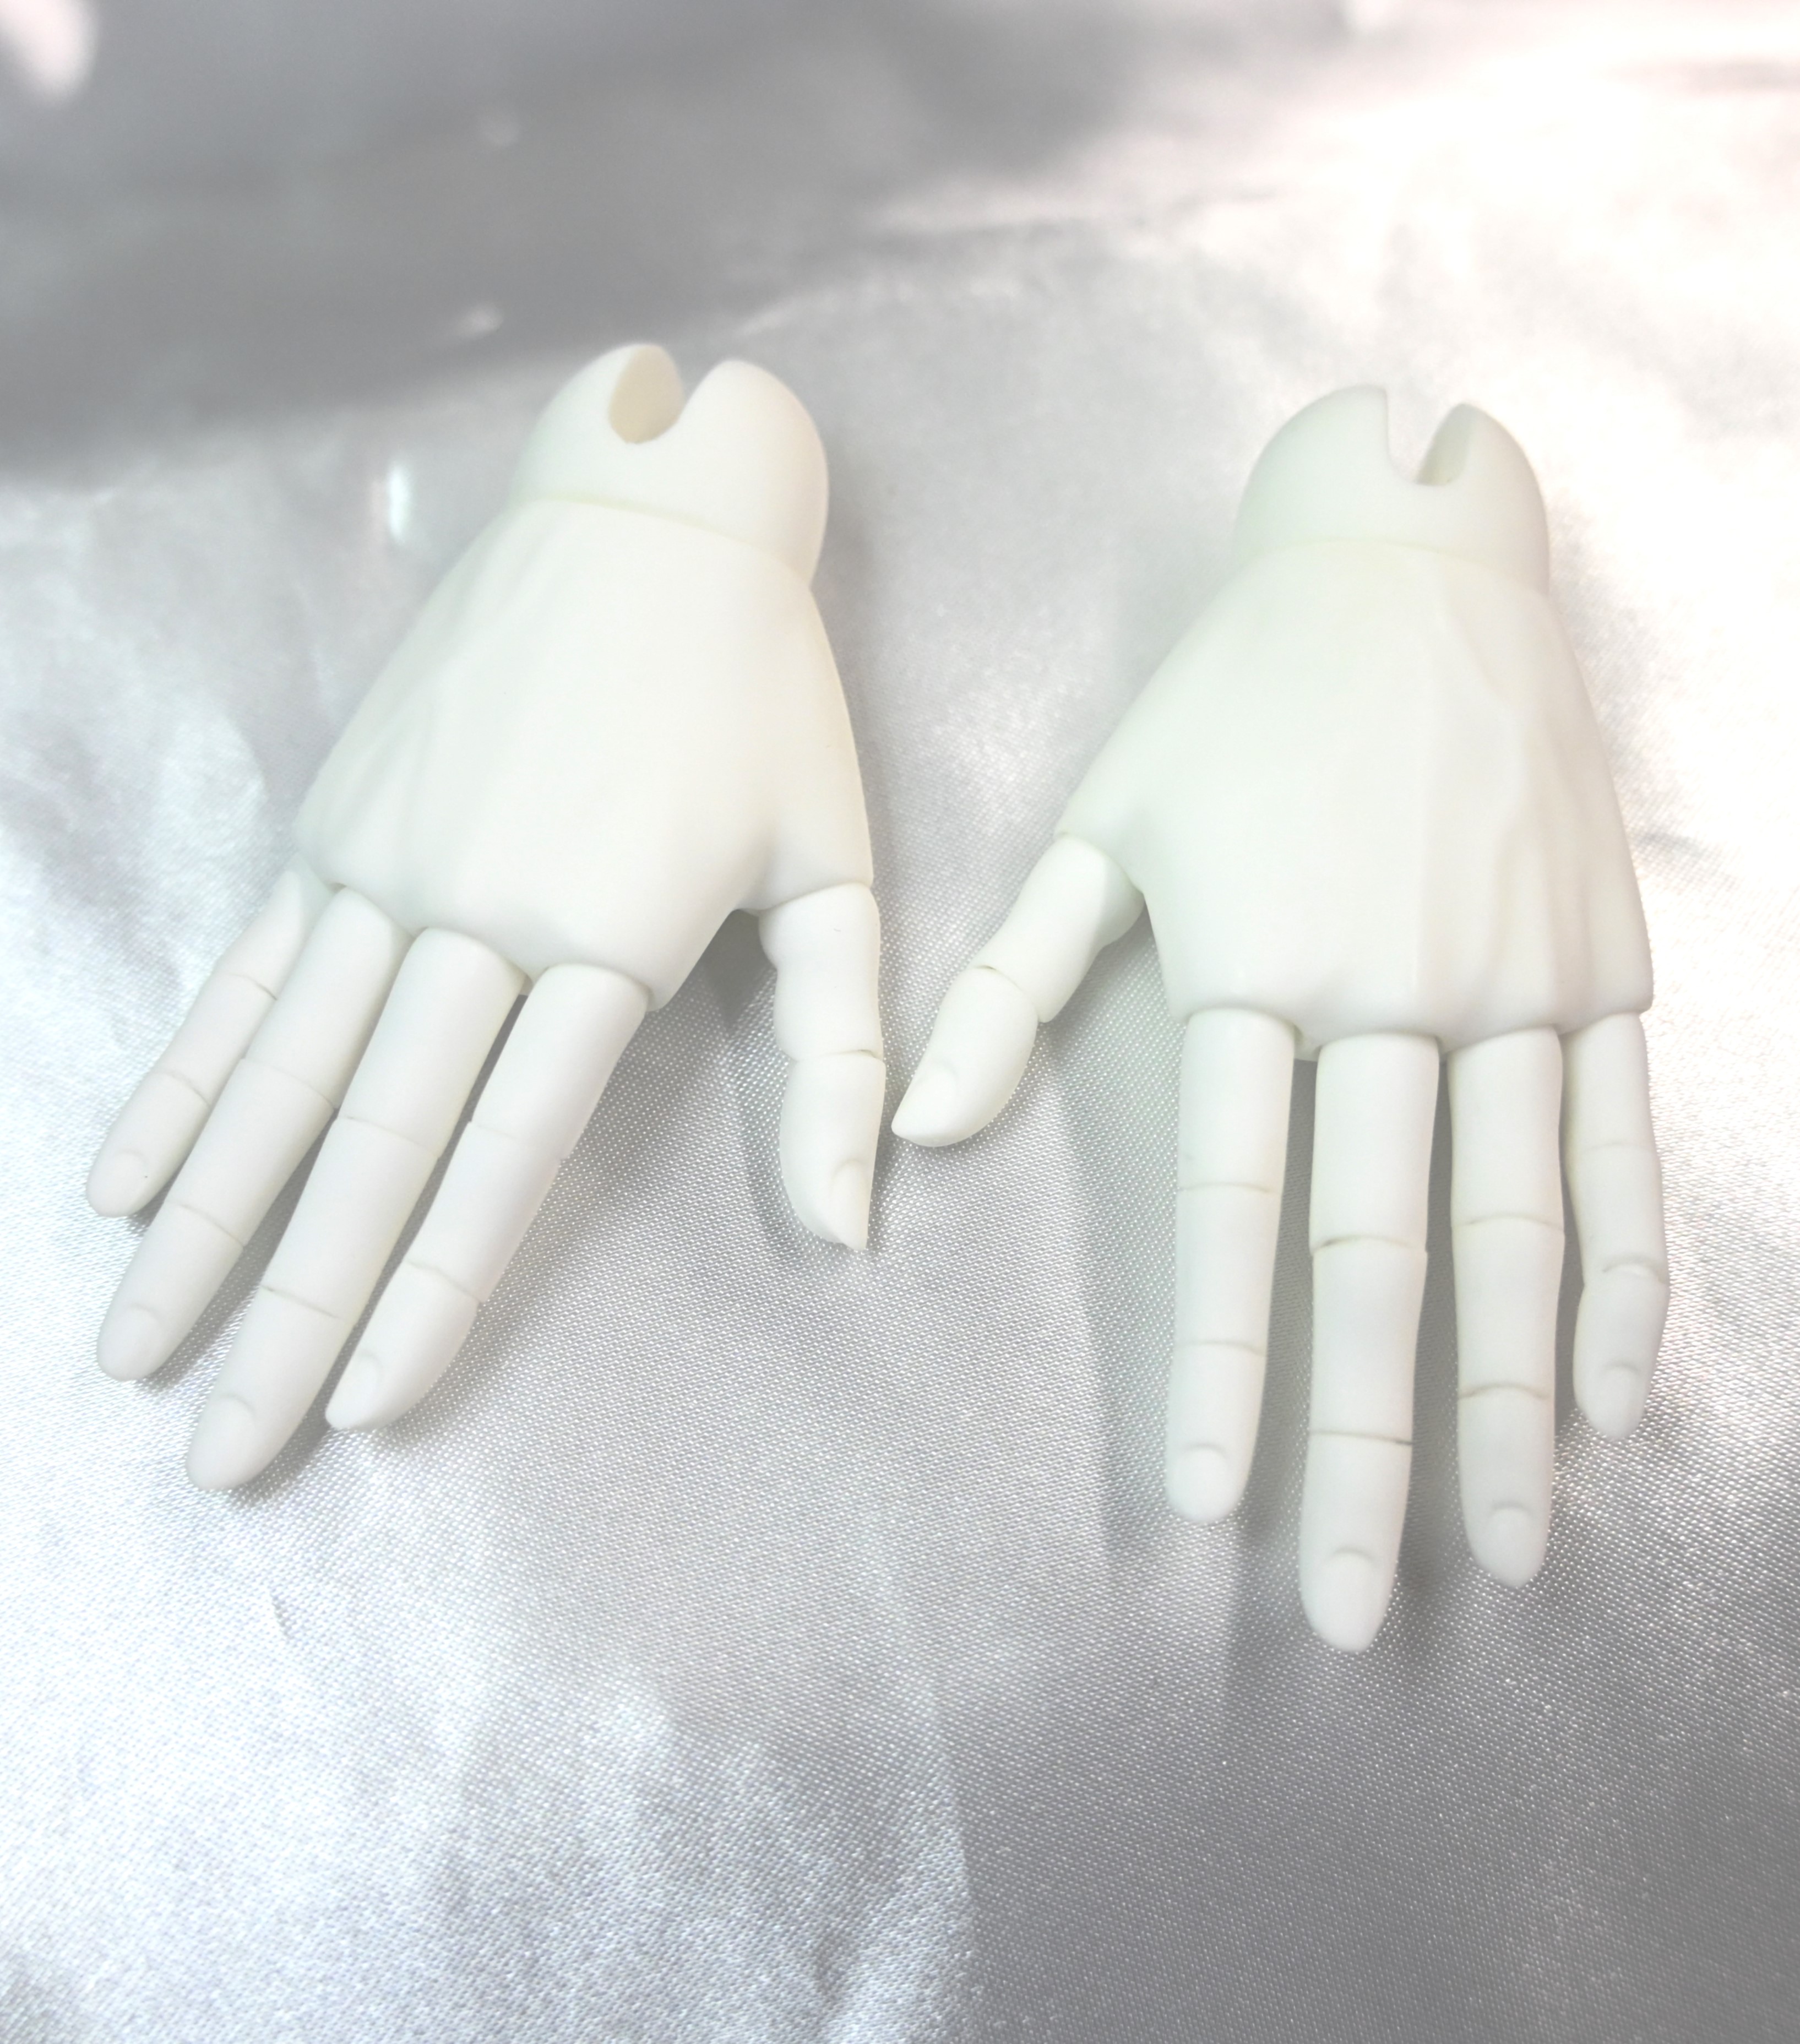 【70cm】 DIKADOLL / Senior hand parts B(short nail)Pure white Skin